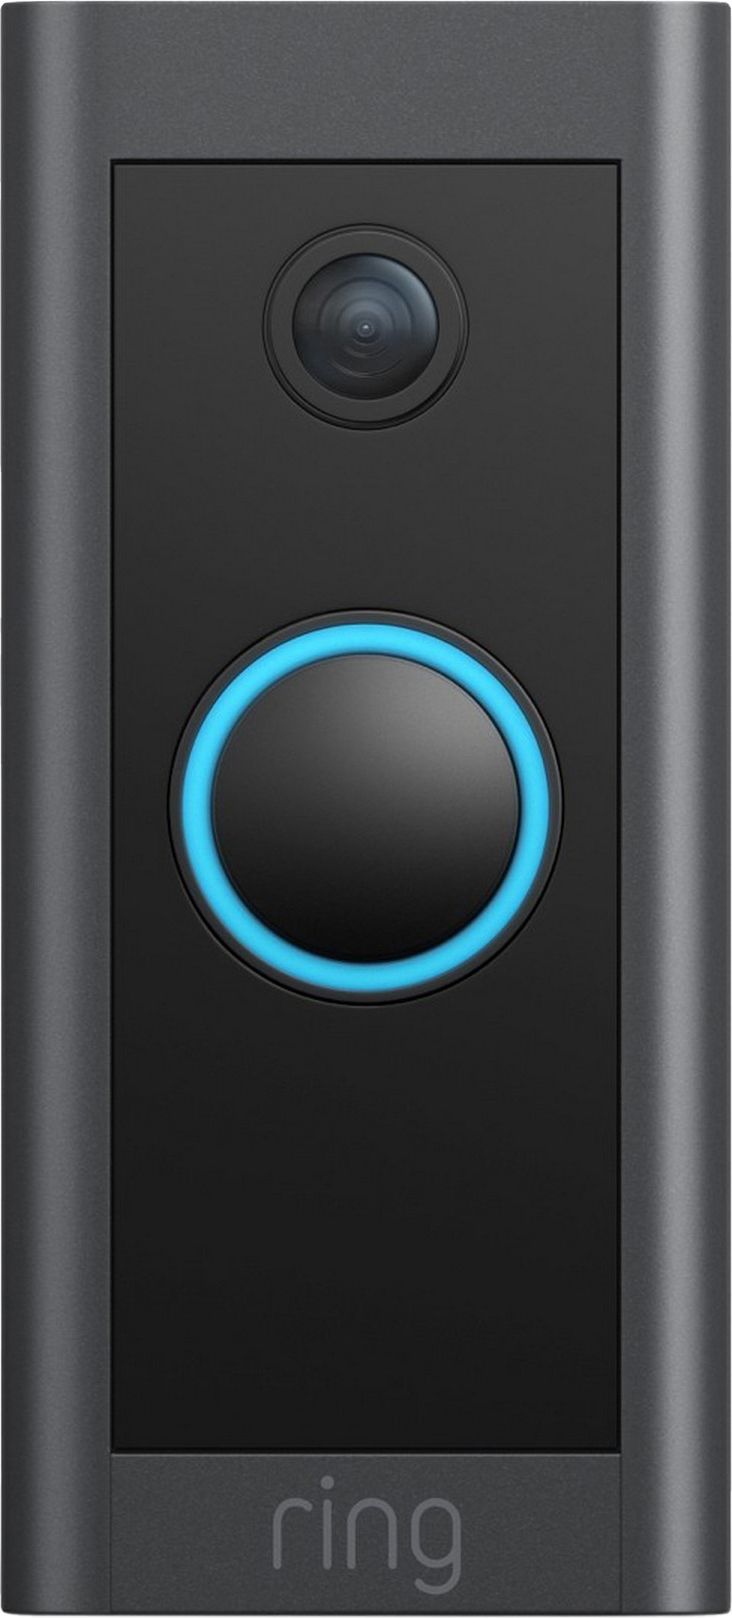 Ring Video Doorbell Wired Smart Doorbell - Black, Black